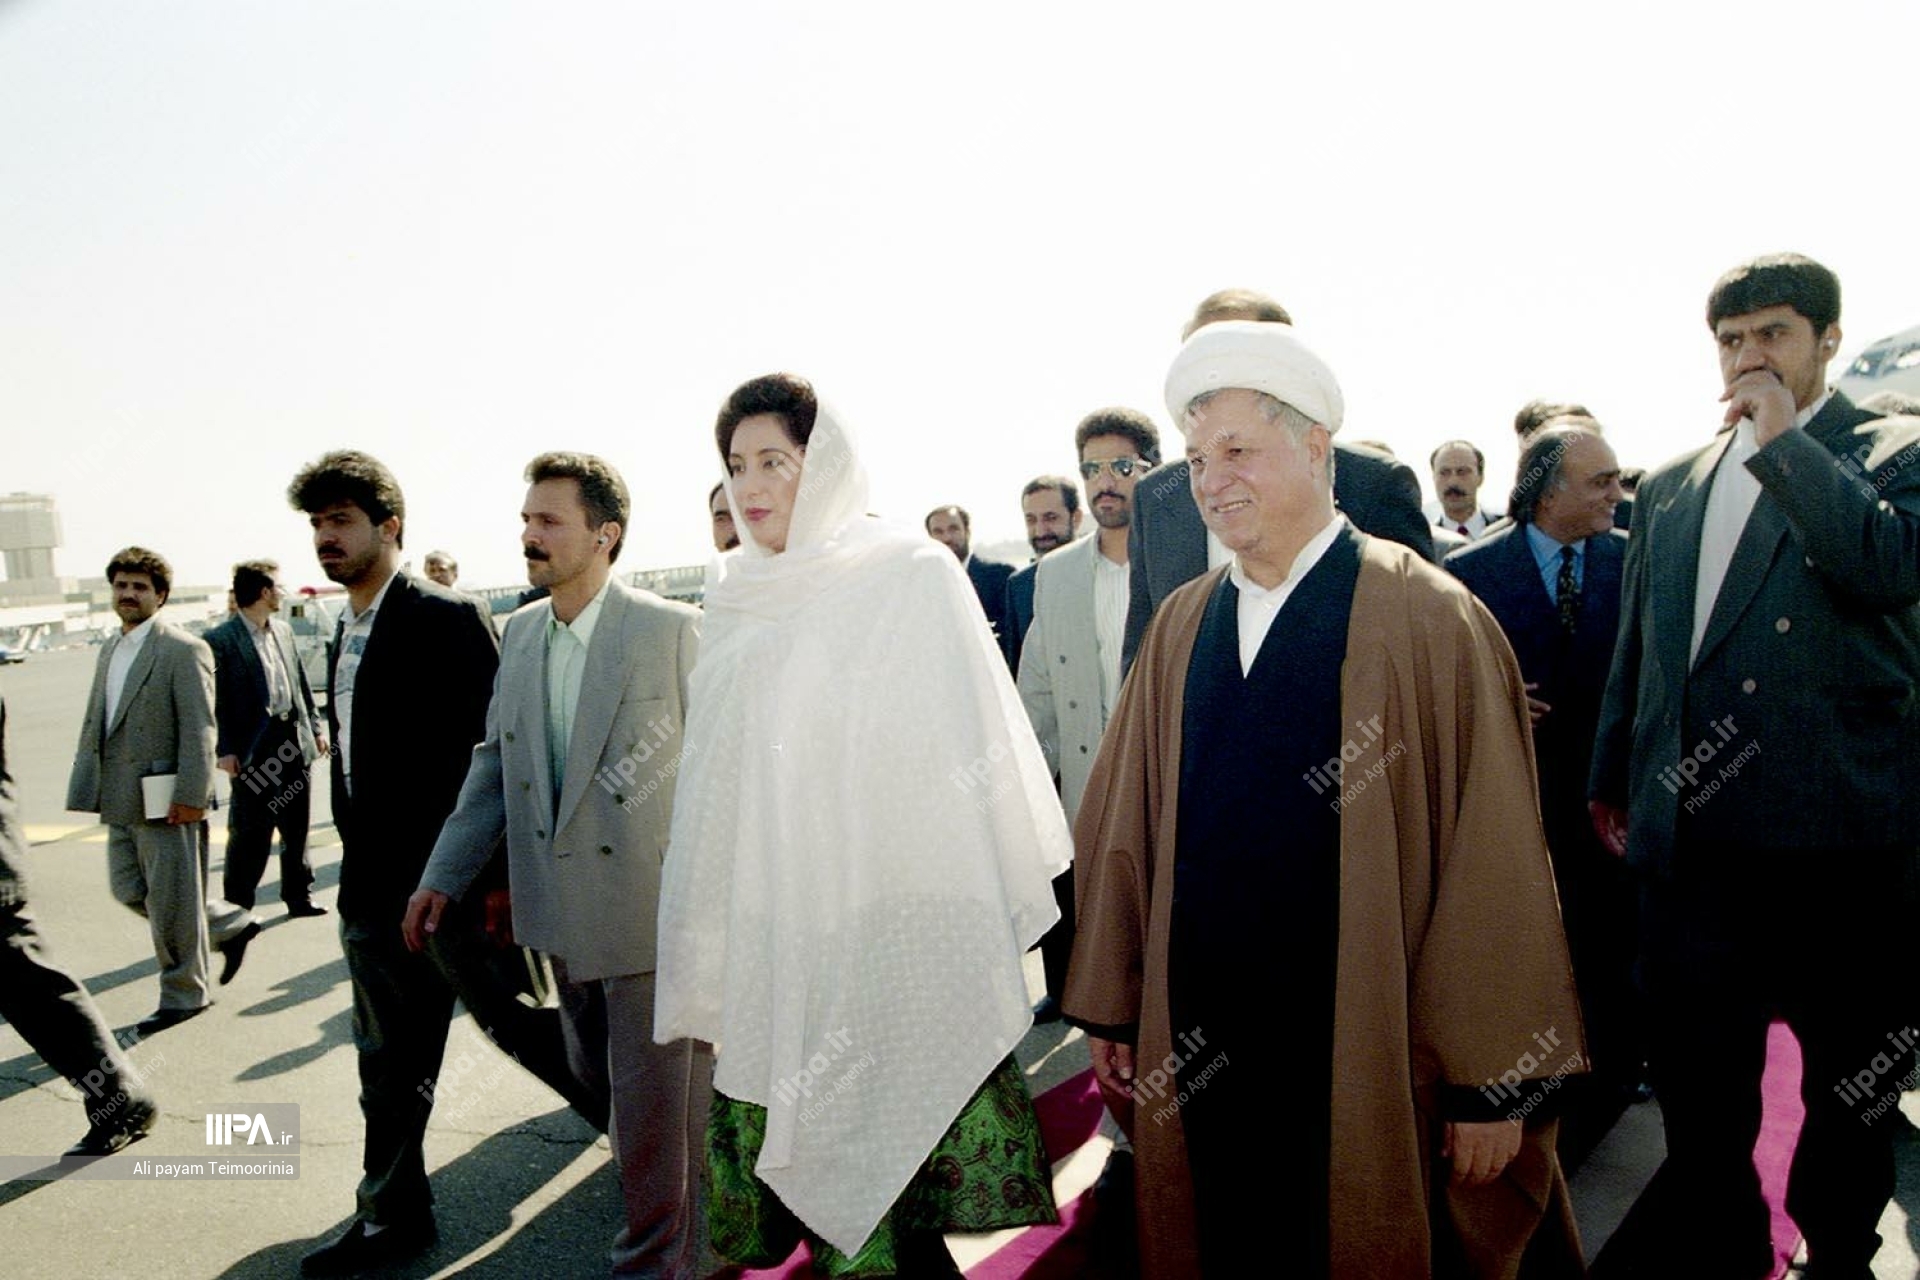 عکس های منتشر نشده از سفر بی نظیر بوتو به تهران در سال ۱۳۷۴